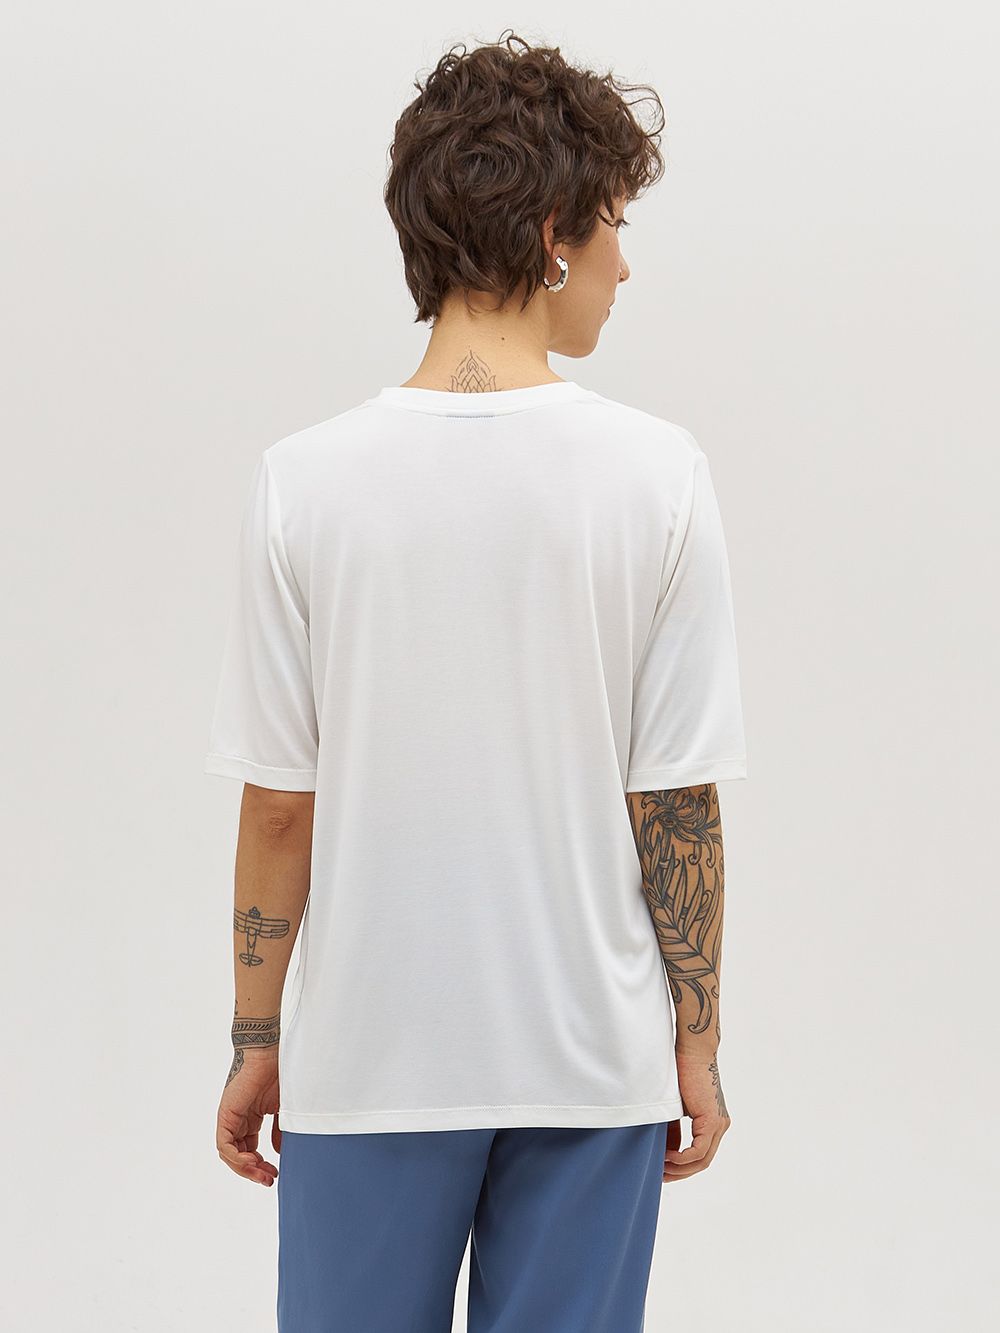 Белая базовая футболка CINIS из эко-ткани «модал». Изображение 4